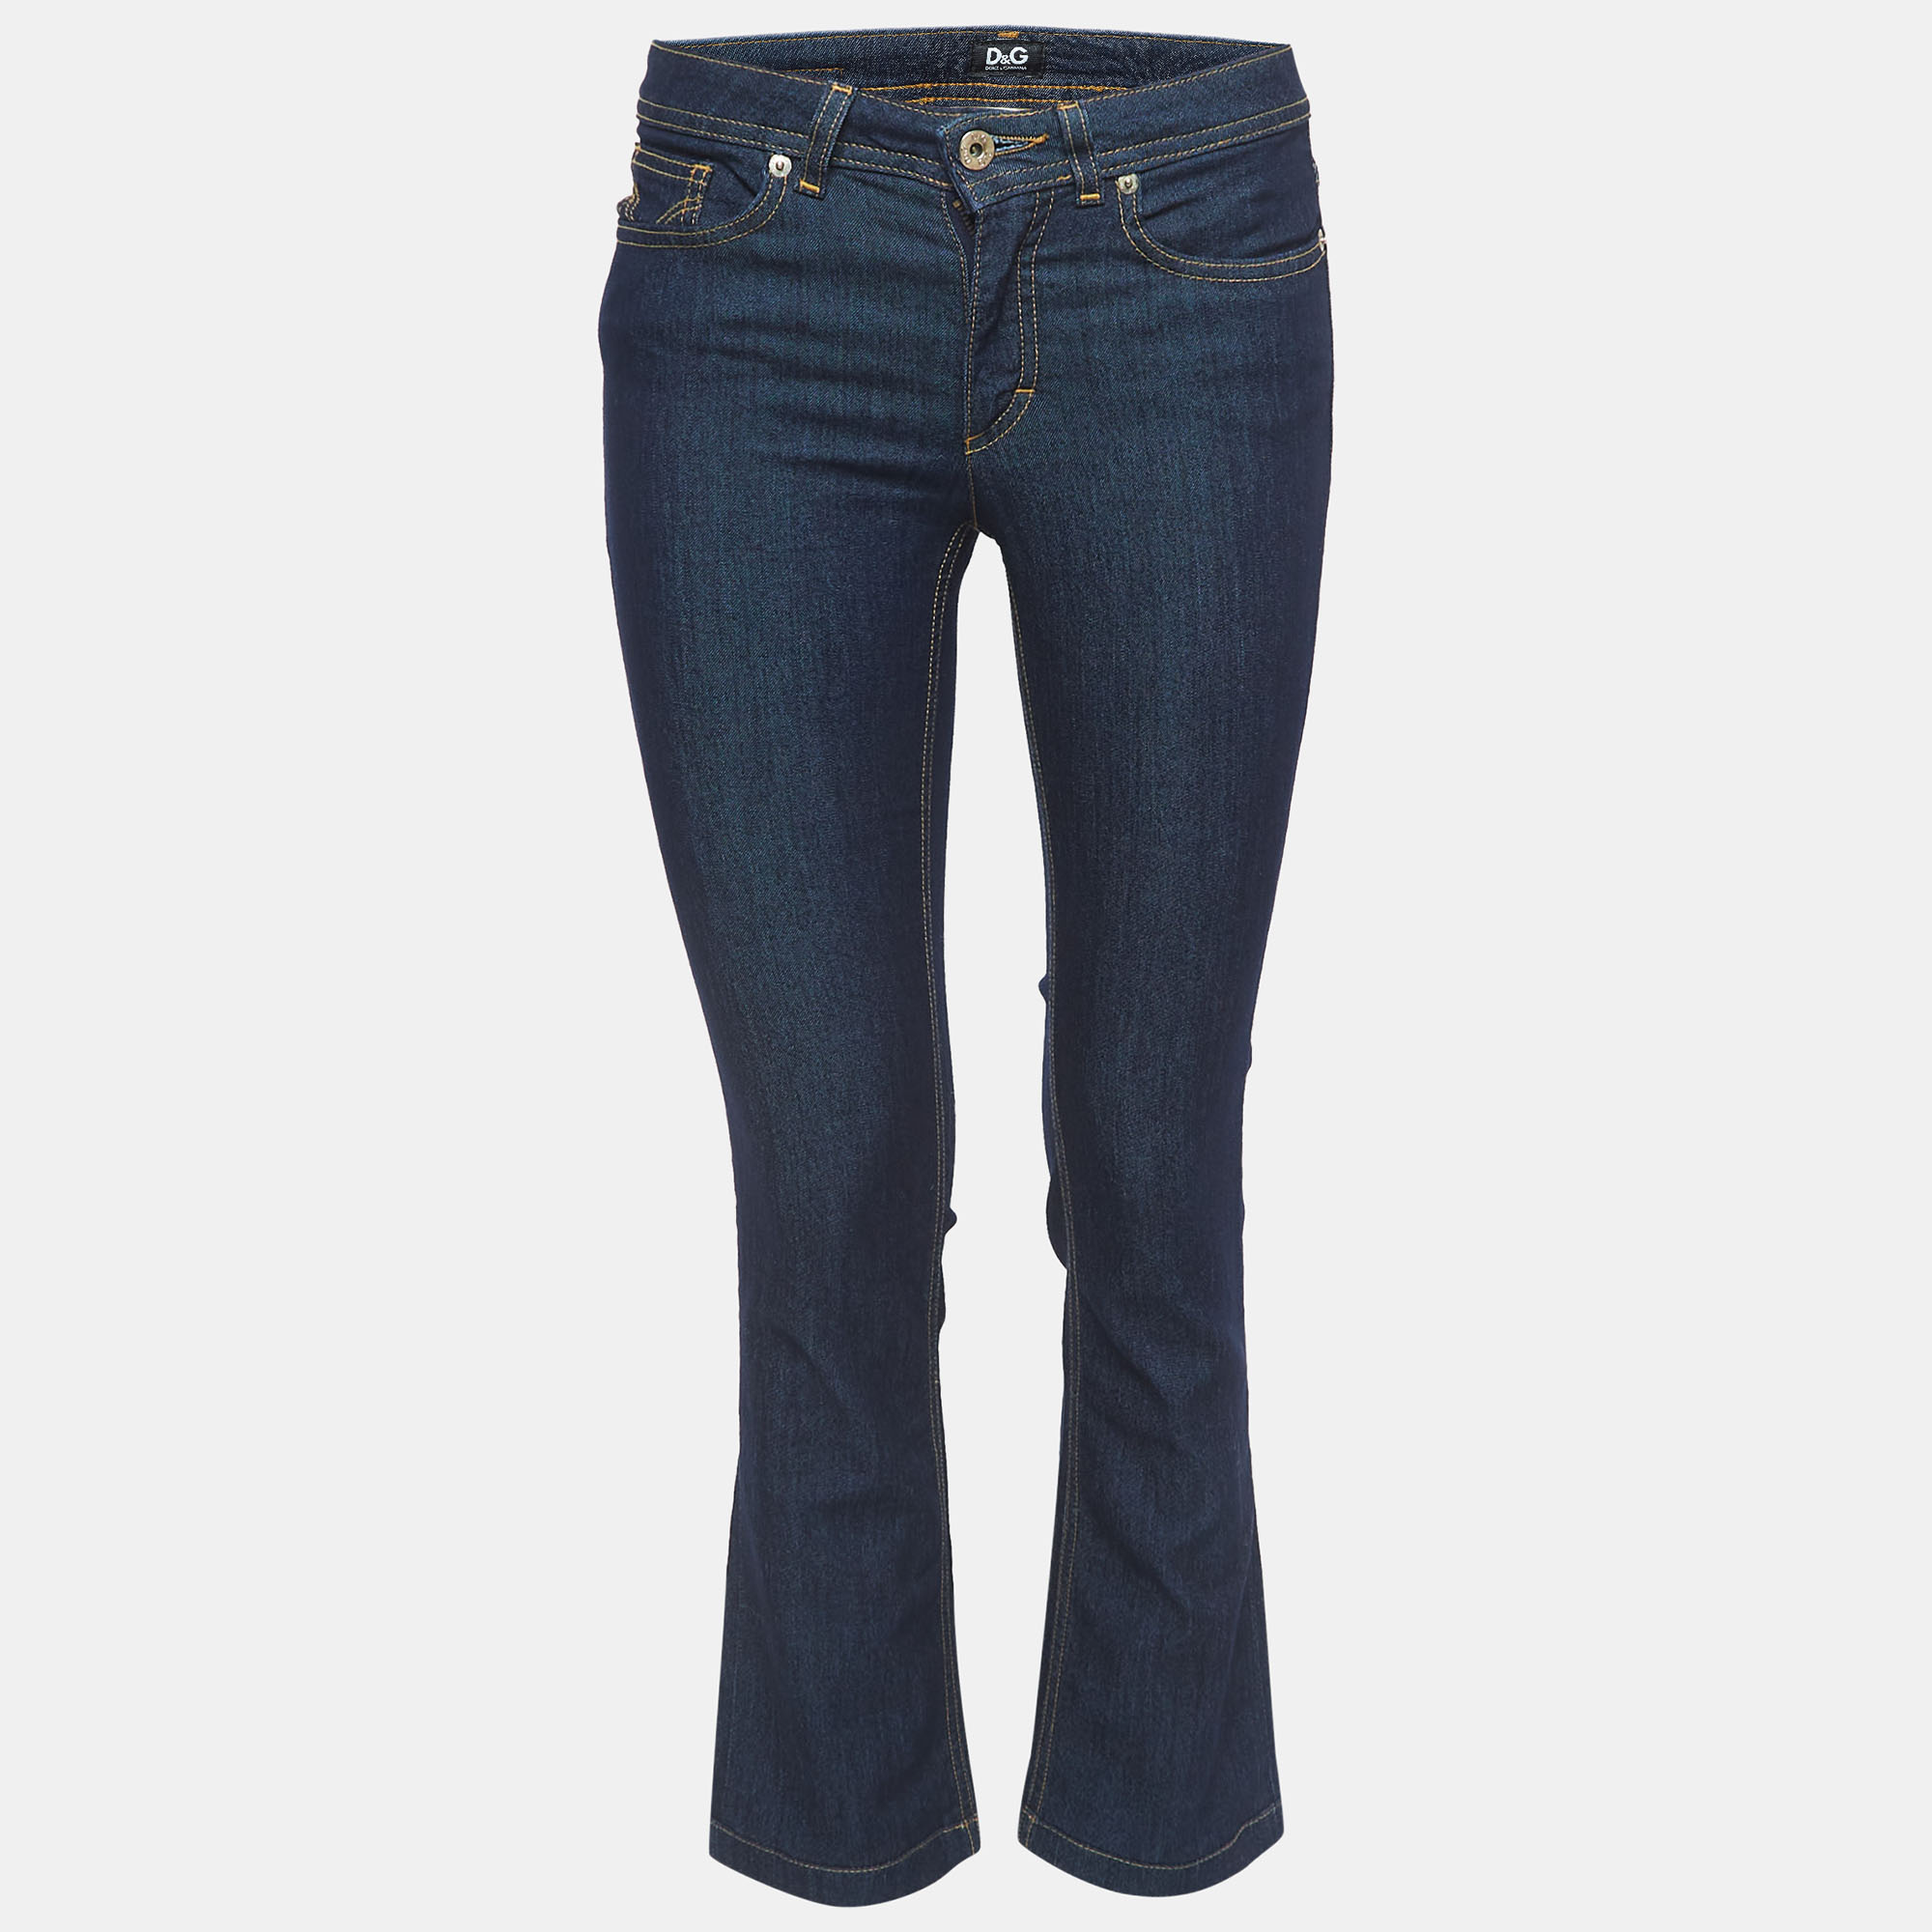 D&g dark blue denim slimmy tight jeans s waist 24